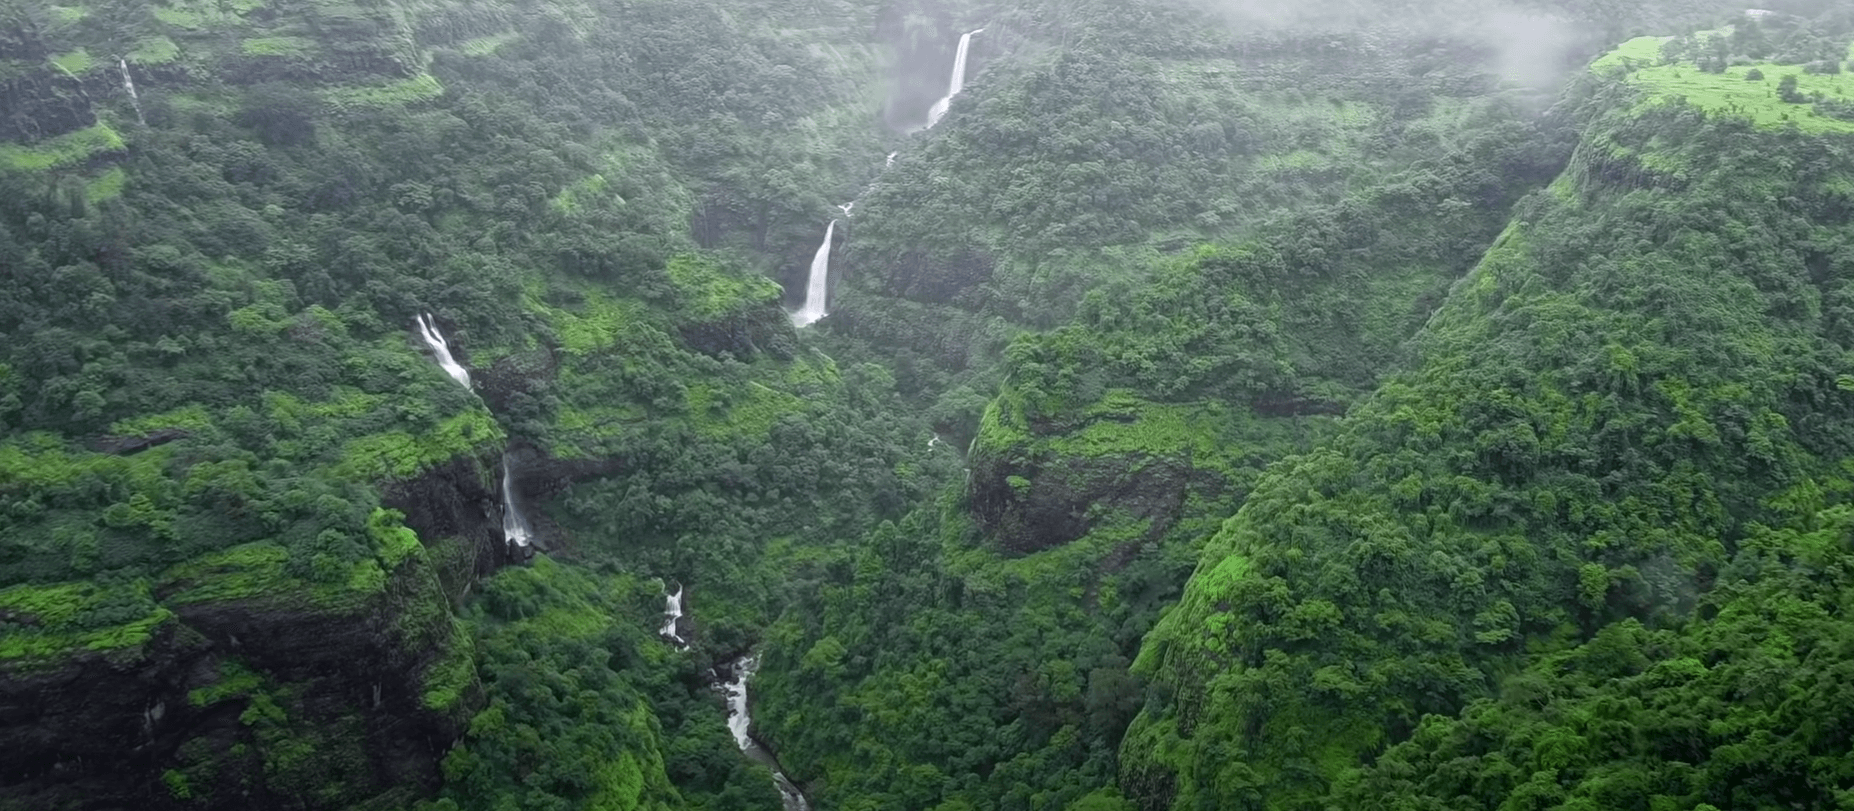 Kune Waterfall